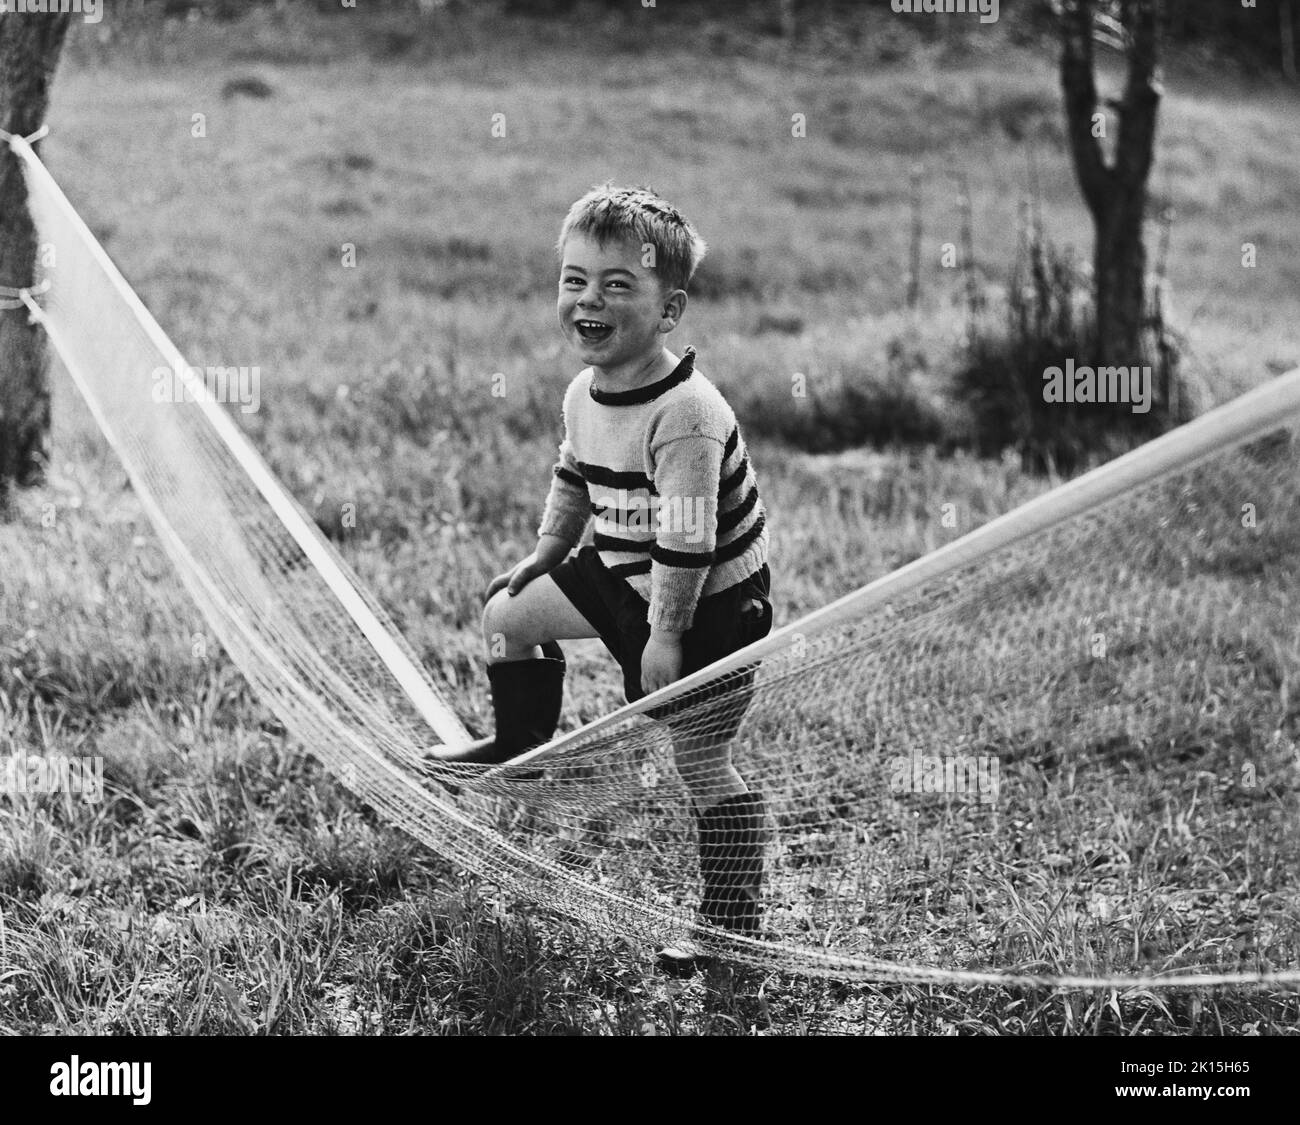 La fotografia è intitolata: "Che cosa ti aspetteresti, Forest Hills?". Un ragazzo ridendo tramina una rete da tennis. Foto Stock